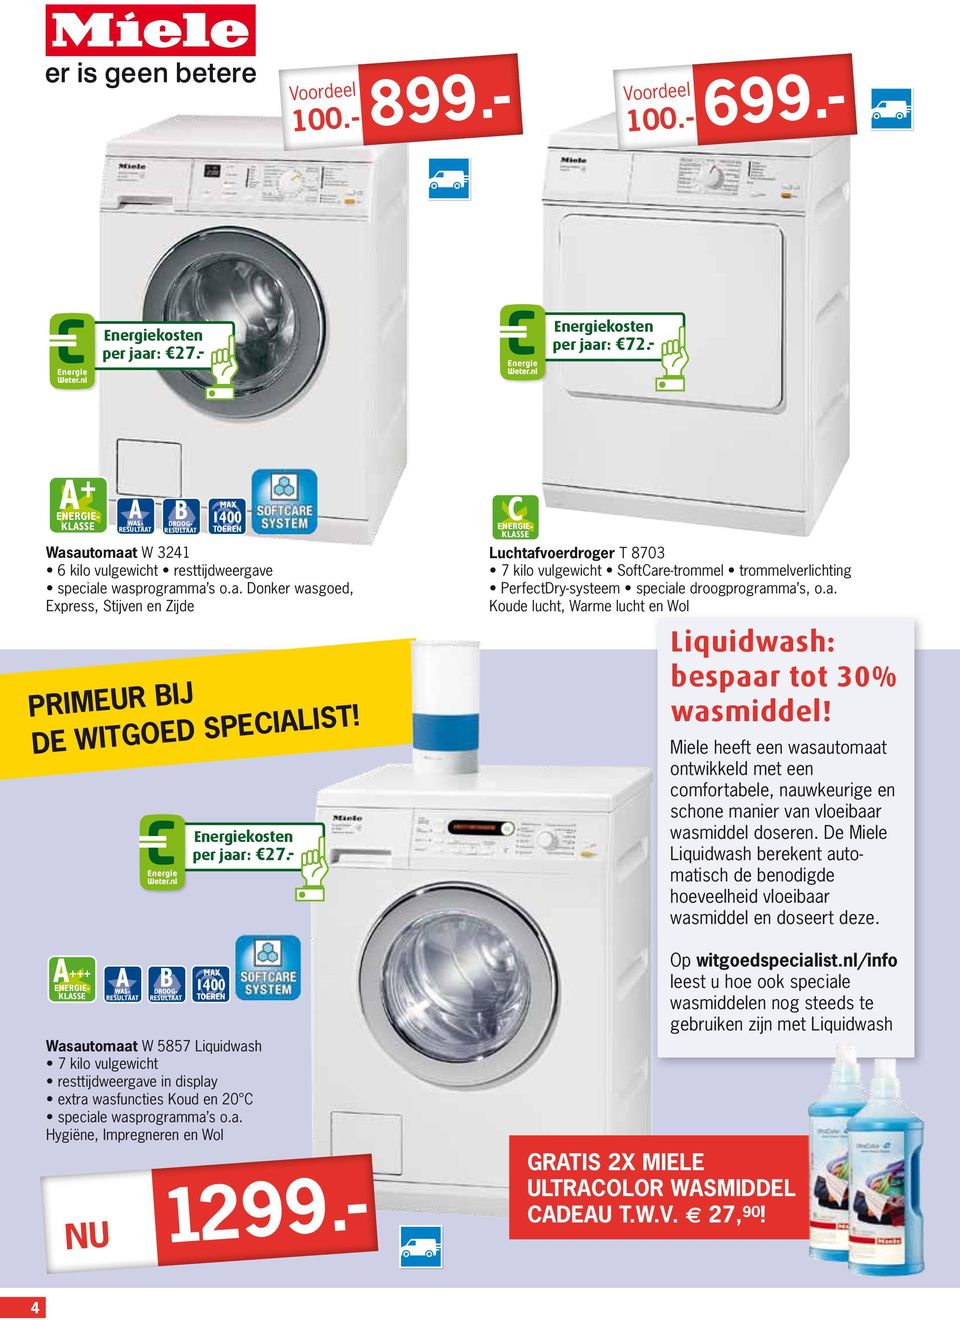 Miele heeft een wasautomaat ontwikkeld met een comfortabele, nauwkeurige en schone manier van vloeibaar wasmiddel doseren.